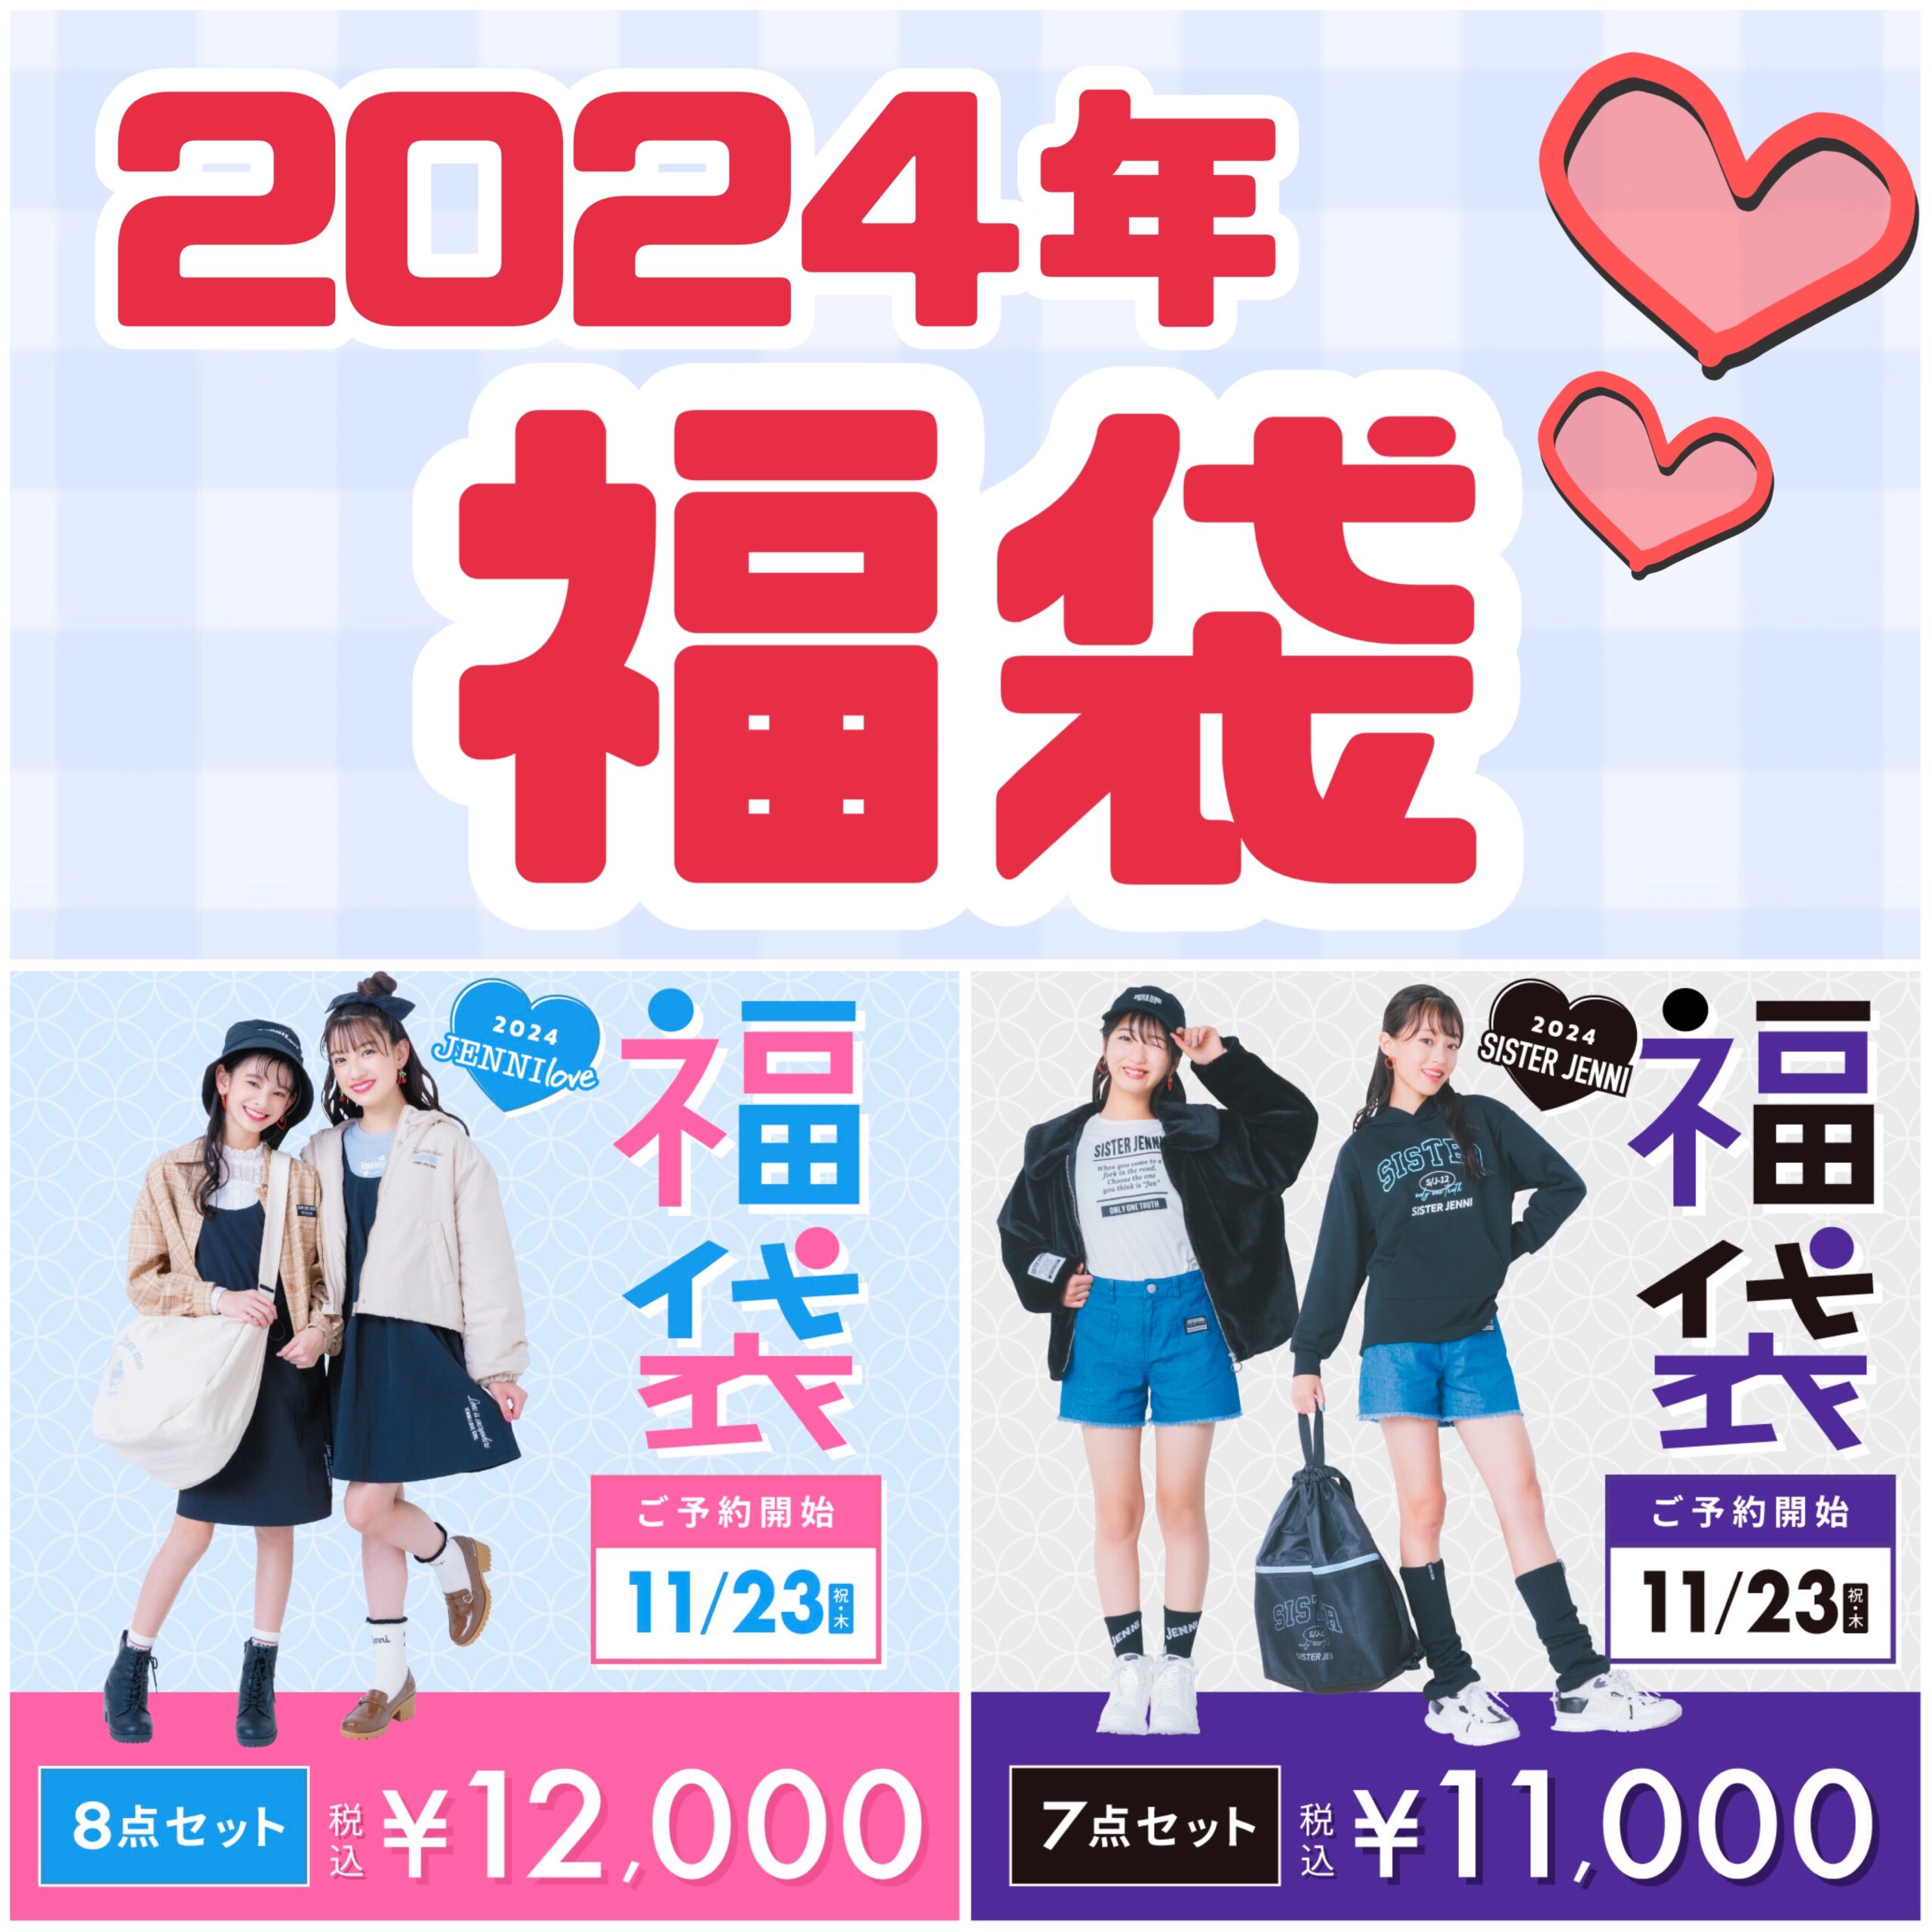 2024年福袋♡今年もご予約販売決定!!! - JENNI SHOP BLOG